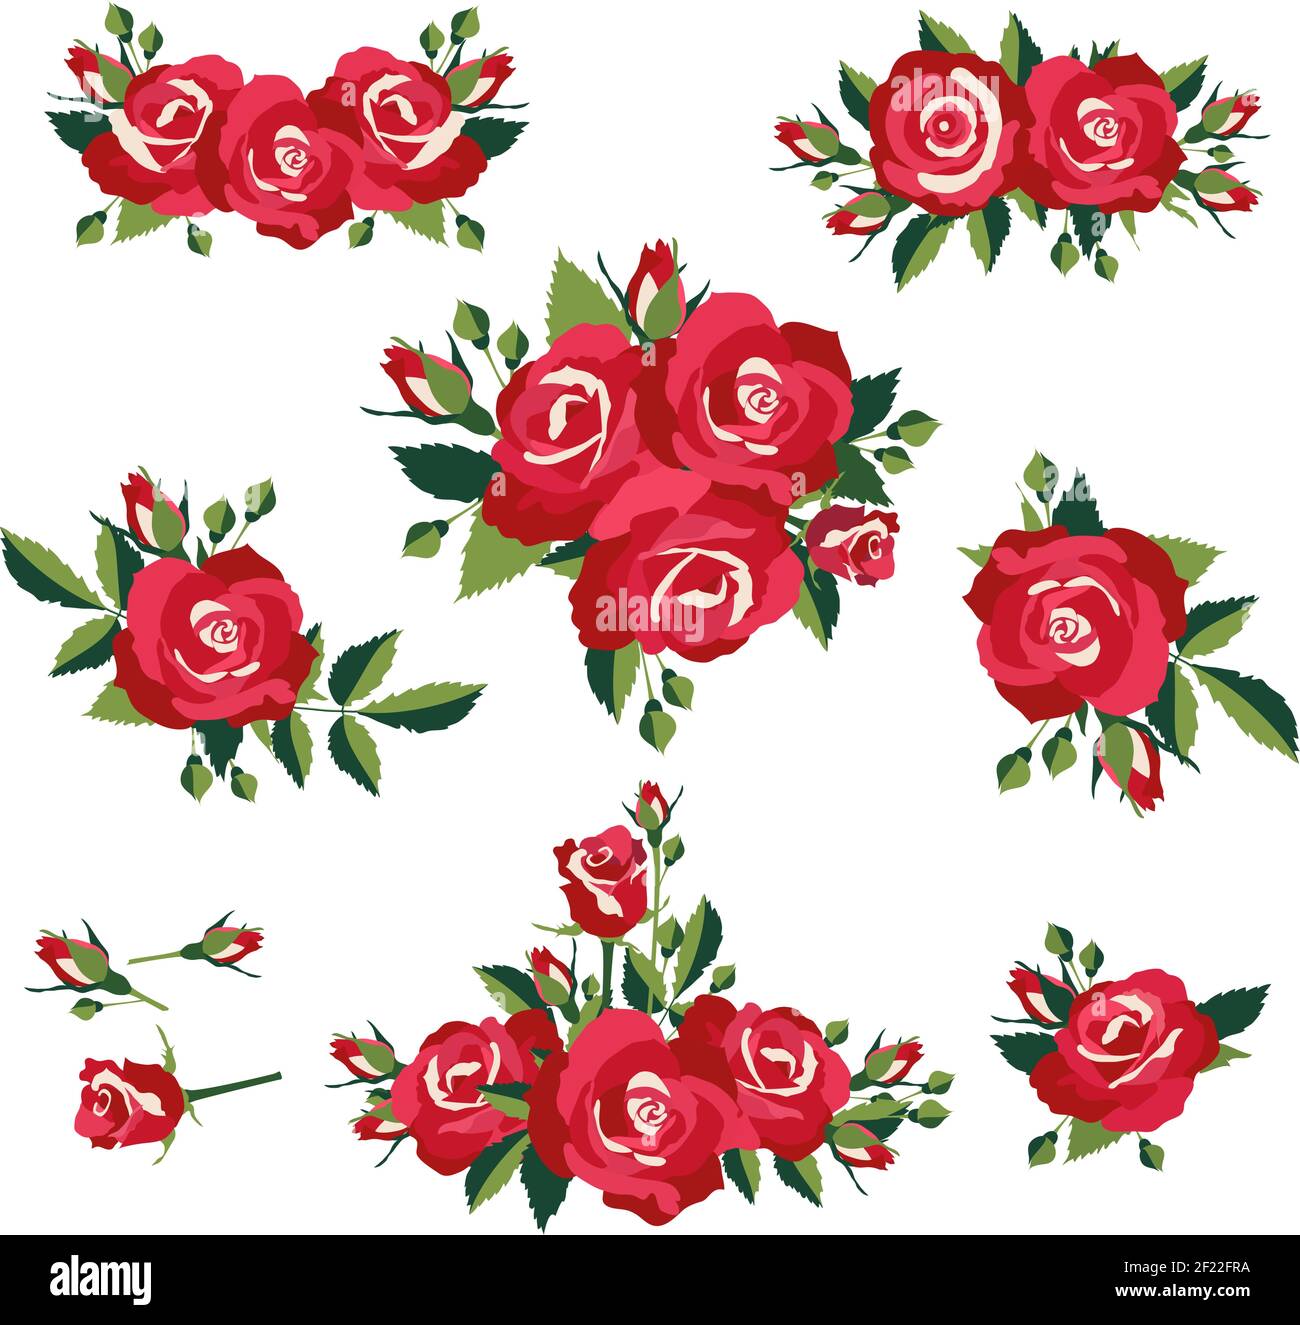 blütenstand oder Blumensträuße von Rosen auf weißem Hintergrund Vektor-Illustration Stock Vektor